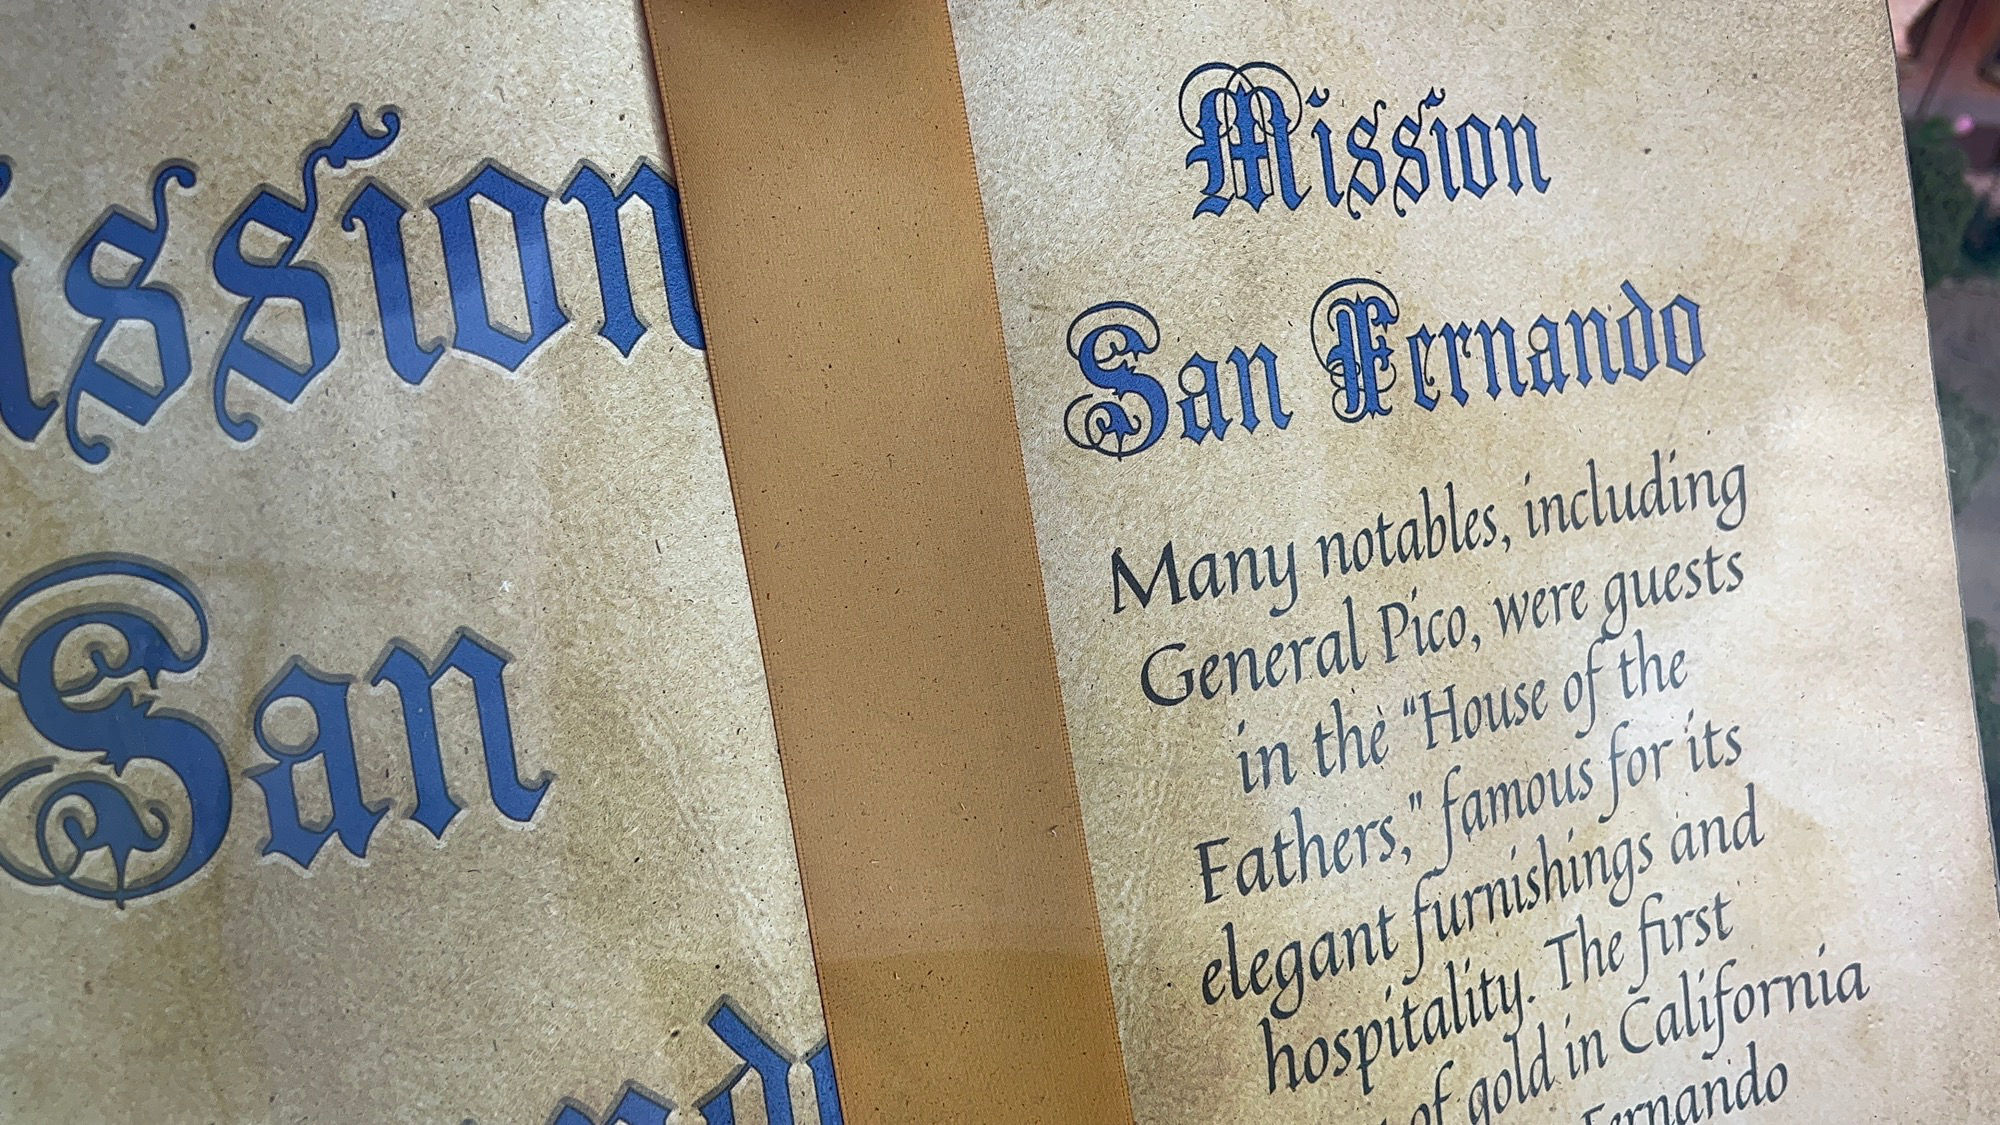 Mission San Fernando